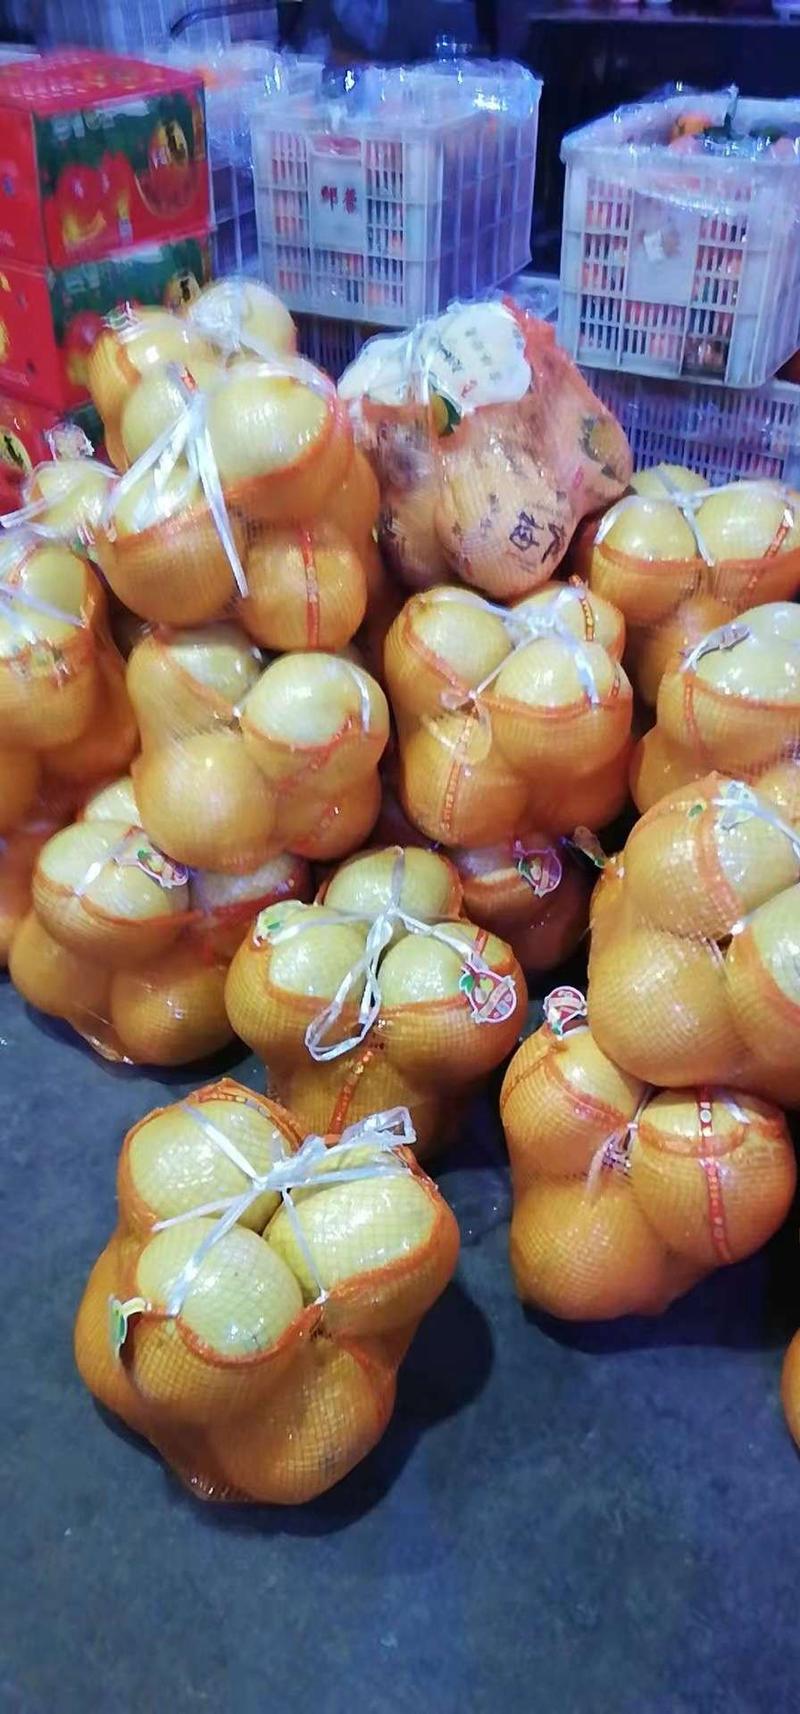 平和红心柚子柚子琯溪蜜柚三红柚很甜很好吃